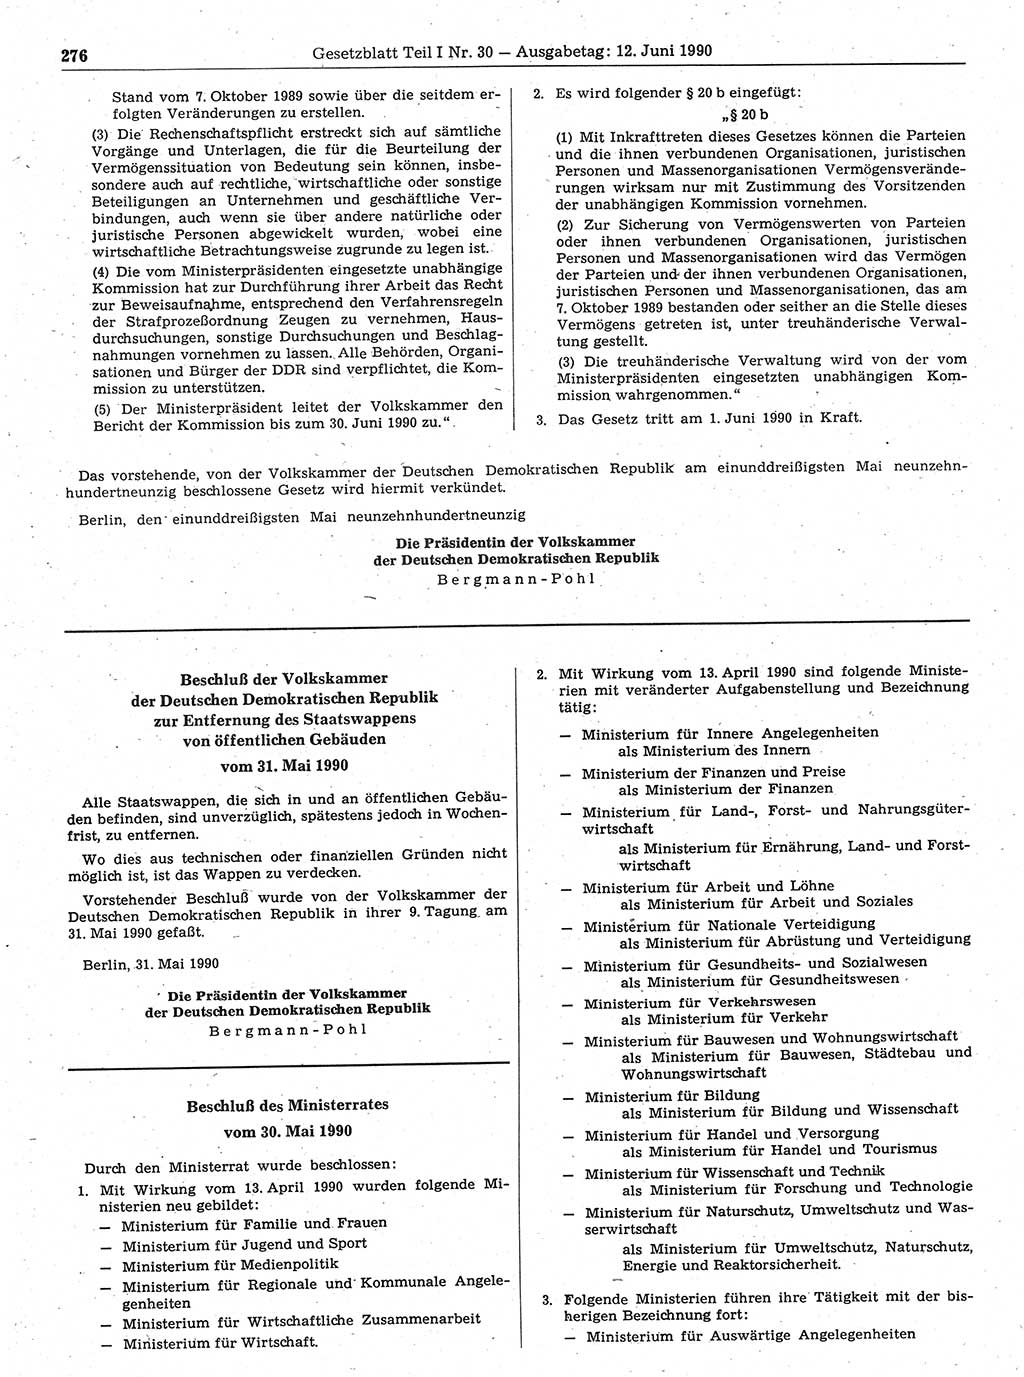 Gesetzblatt (GBl.) der Deutschen Demokratischen Republik (DDR) Teil Ⅰ 1990, Seite 276 (GBl. DDR Ⅰ 1990, S. 276)